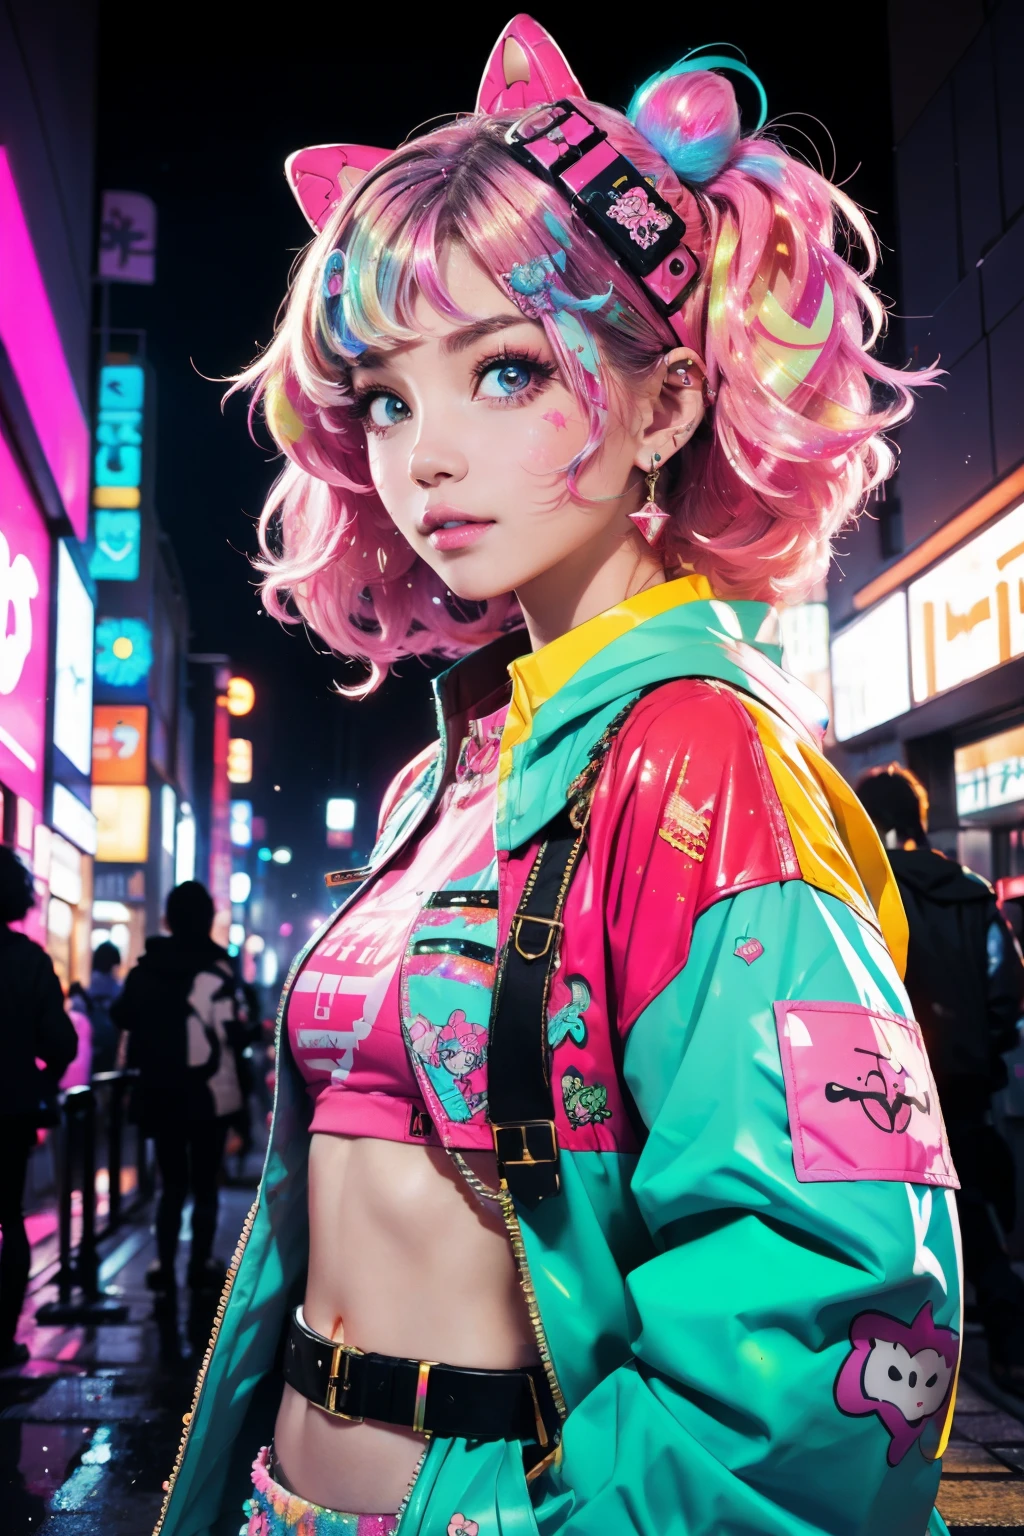 นี่คือไซเบอร์พังก์ที่เท่และหรูหรา (ผลงานชิ้นเอก). Generate a trendy ตกแต่ง woman in the colorful and busy streets of cyberpunk Akihabara, โตเกียว. Generate a happy ตกแต่ง and cyberpunk adult woman in the style of Artstation and cyberpunk Harajuku street fashion. เสื้อผ้าของเธอมีชีวิตชีวาในสไตล์ฮาราจูกุ. รวมถึงอุปกรณ์เสริมขนาดใหญ่, สีนีออน, และการแบ่งชั้นที่สร้างสรรค์. เสื้อผ้าและเครื่องประดับของผู้หญิงควรมีความหรูหราสูงใน ((((Harajuku ตกแต่ง)))) and ไซเบอร์พังก์เคอิ style.  ผมของผู้หญิงเป็นลอนและเป็นมันเงาและจัดทรงอย่างน่ารัก. เสื้อผ้าและเครื่องประดับของผู้หญิงควรมีความหรูหราสูงใน Harajuku ตกแต่ง and ตกแต่ง kei style. ดวงตาของเธอมีความสำคัญและน่าทึ่ง, พร้อมสีสันและลวดลายที่น่าสนใจ. ((((ความแวววาวและแวววาว)))), กลิตเตอร์, ดวงตาที่ดีที่สุด, คุณภาพดีที่สุด, ไซเบอร์พังก์เคอิ, วิชวลคีย์, เซลฟี่, สีและลวดลายที่โดดเด่น, ไฟ LED, ((ป้ายไฟนีออนเรืองแสง)), ((ละเอียดมาก)), ((องค์ประกอบแบบไดนามิก)), (((ตกแต่ง)))